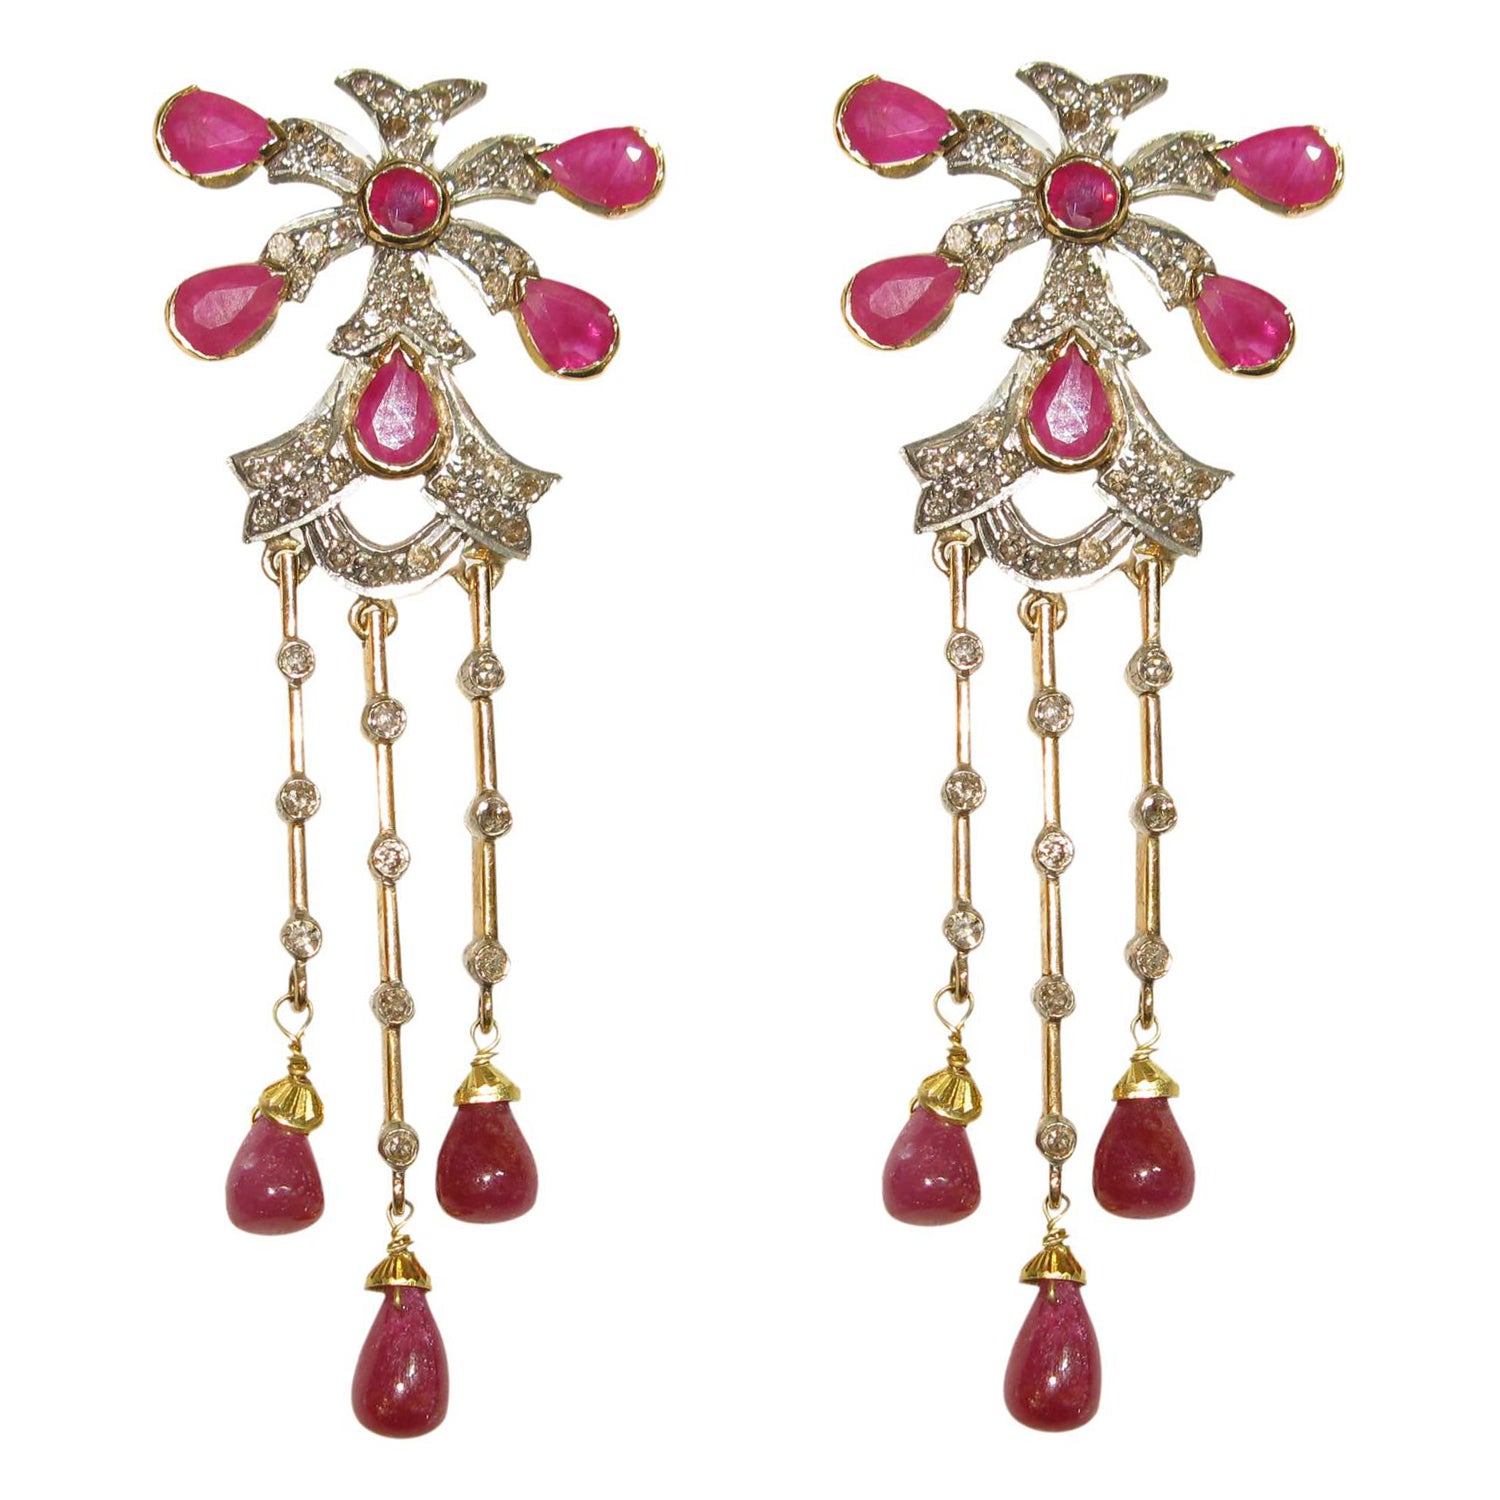 Longues boucles d'oreilles en or 18 carats avec rubis en forme de poire et diamants